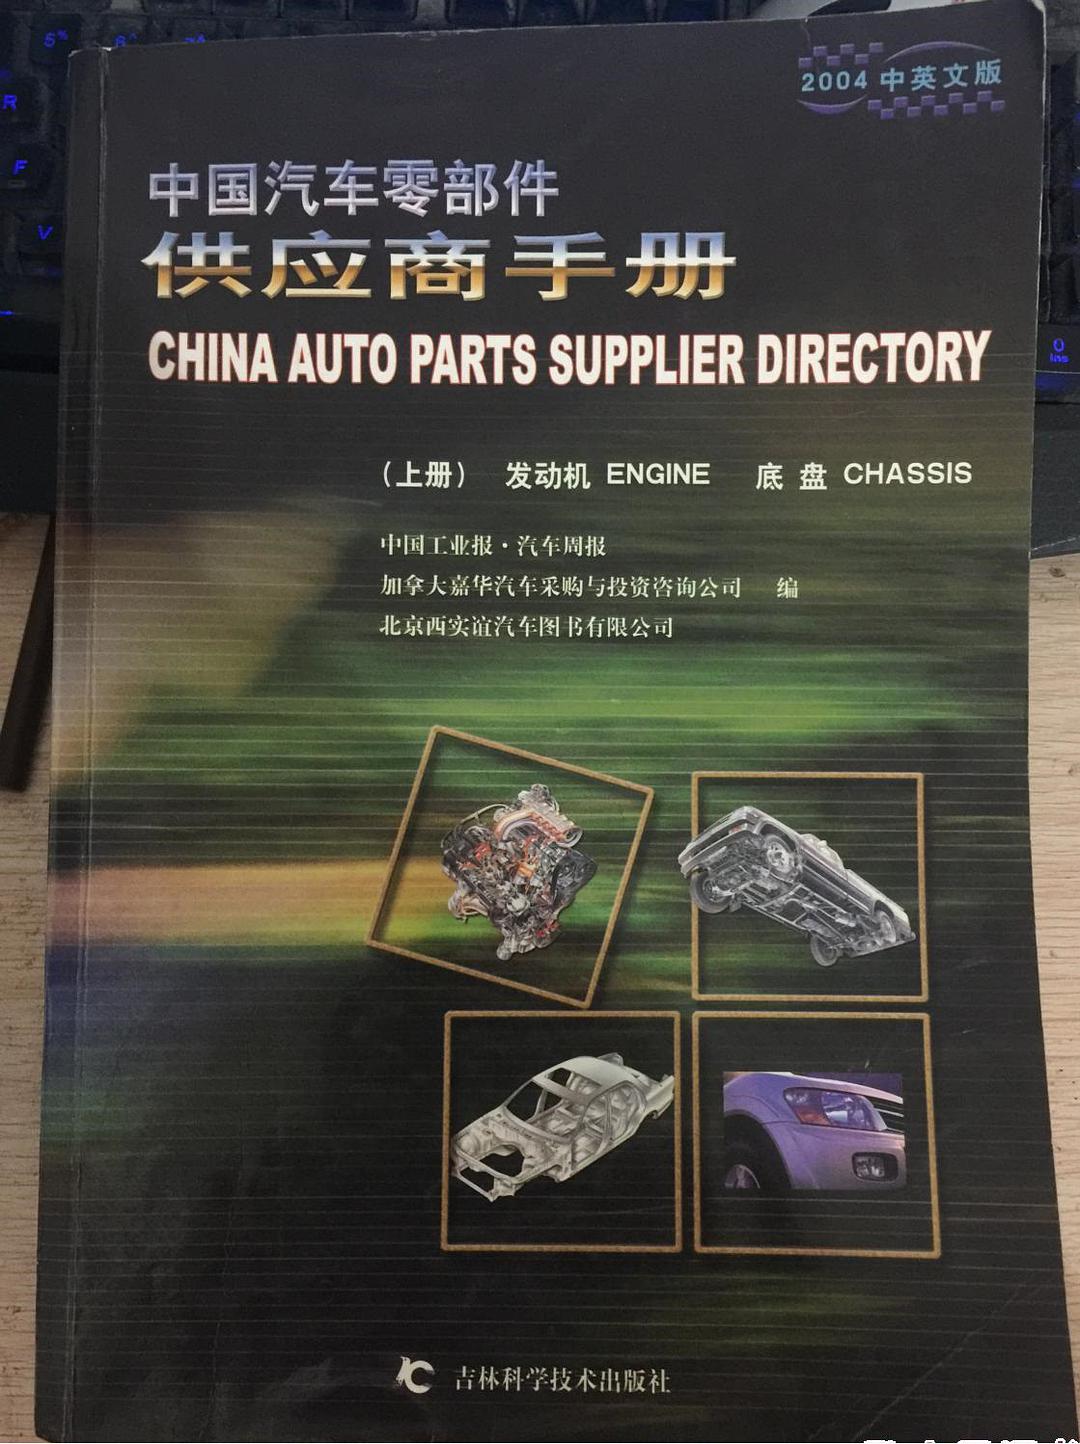 中国汽车OEM供应商手册 下册 车身 电子电器 通用件 [中英文本]